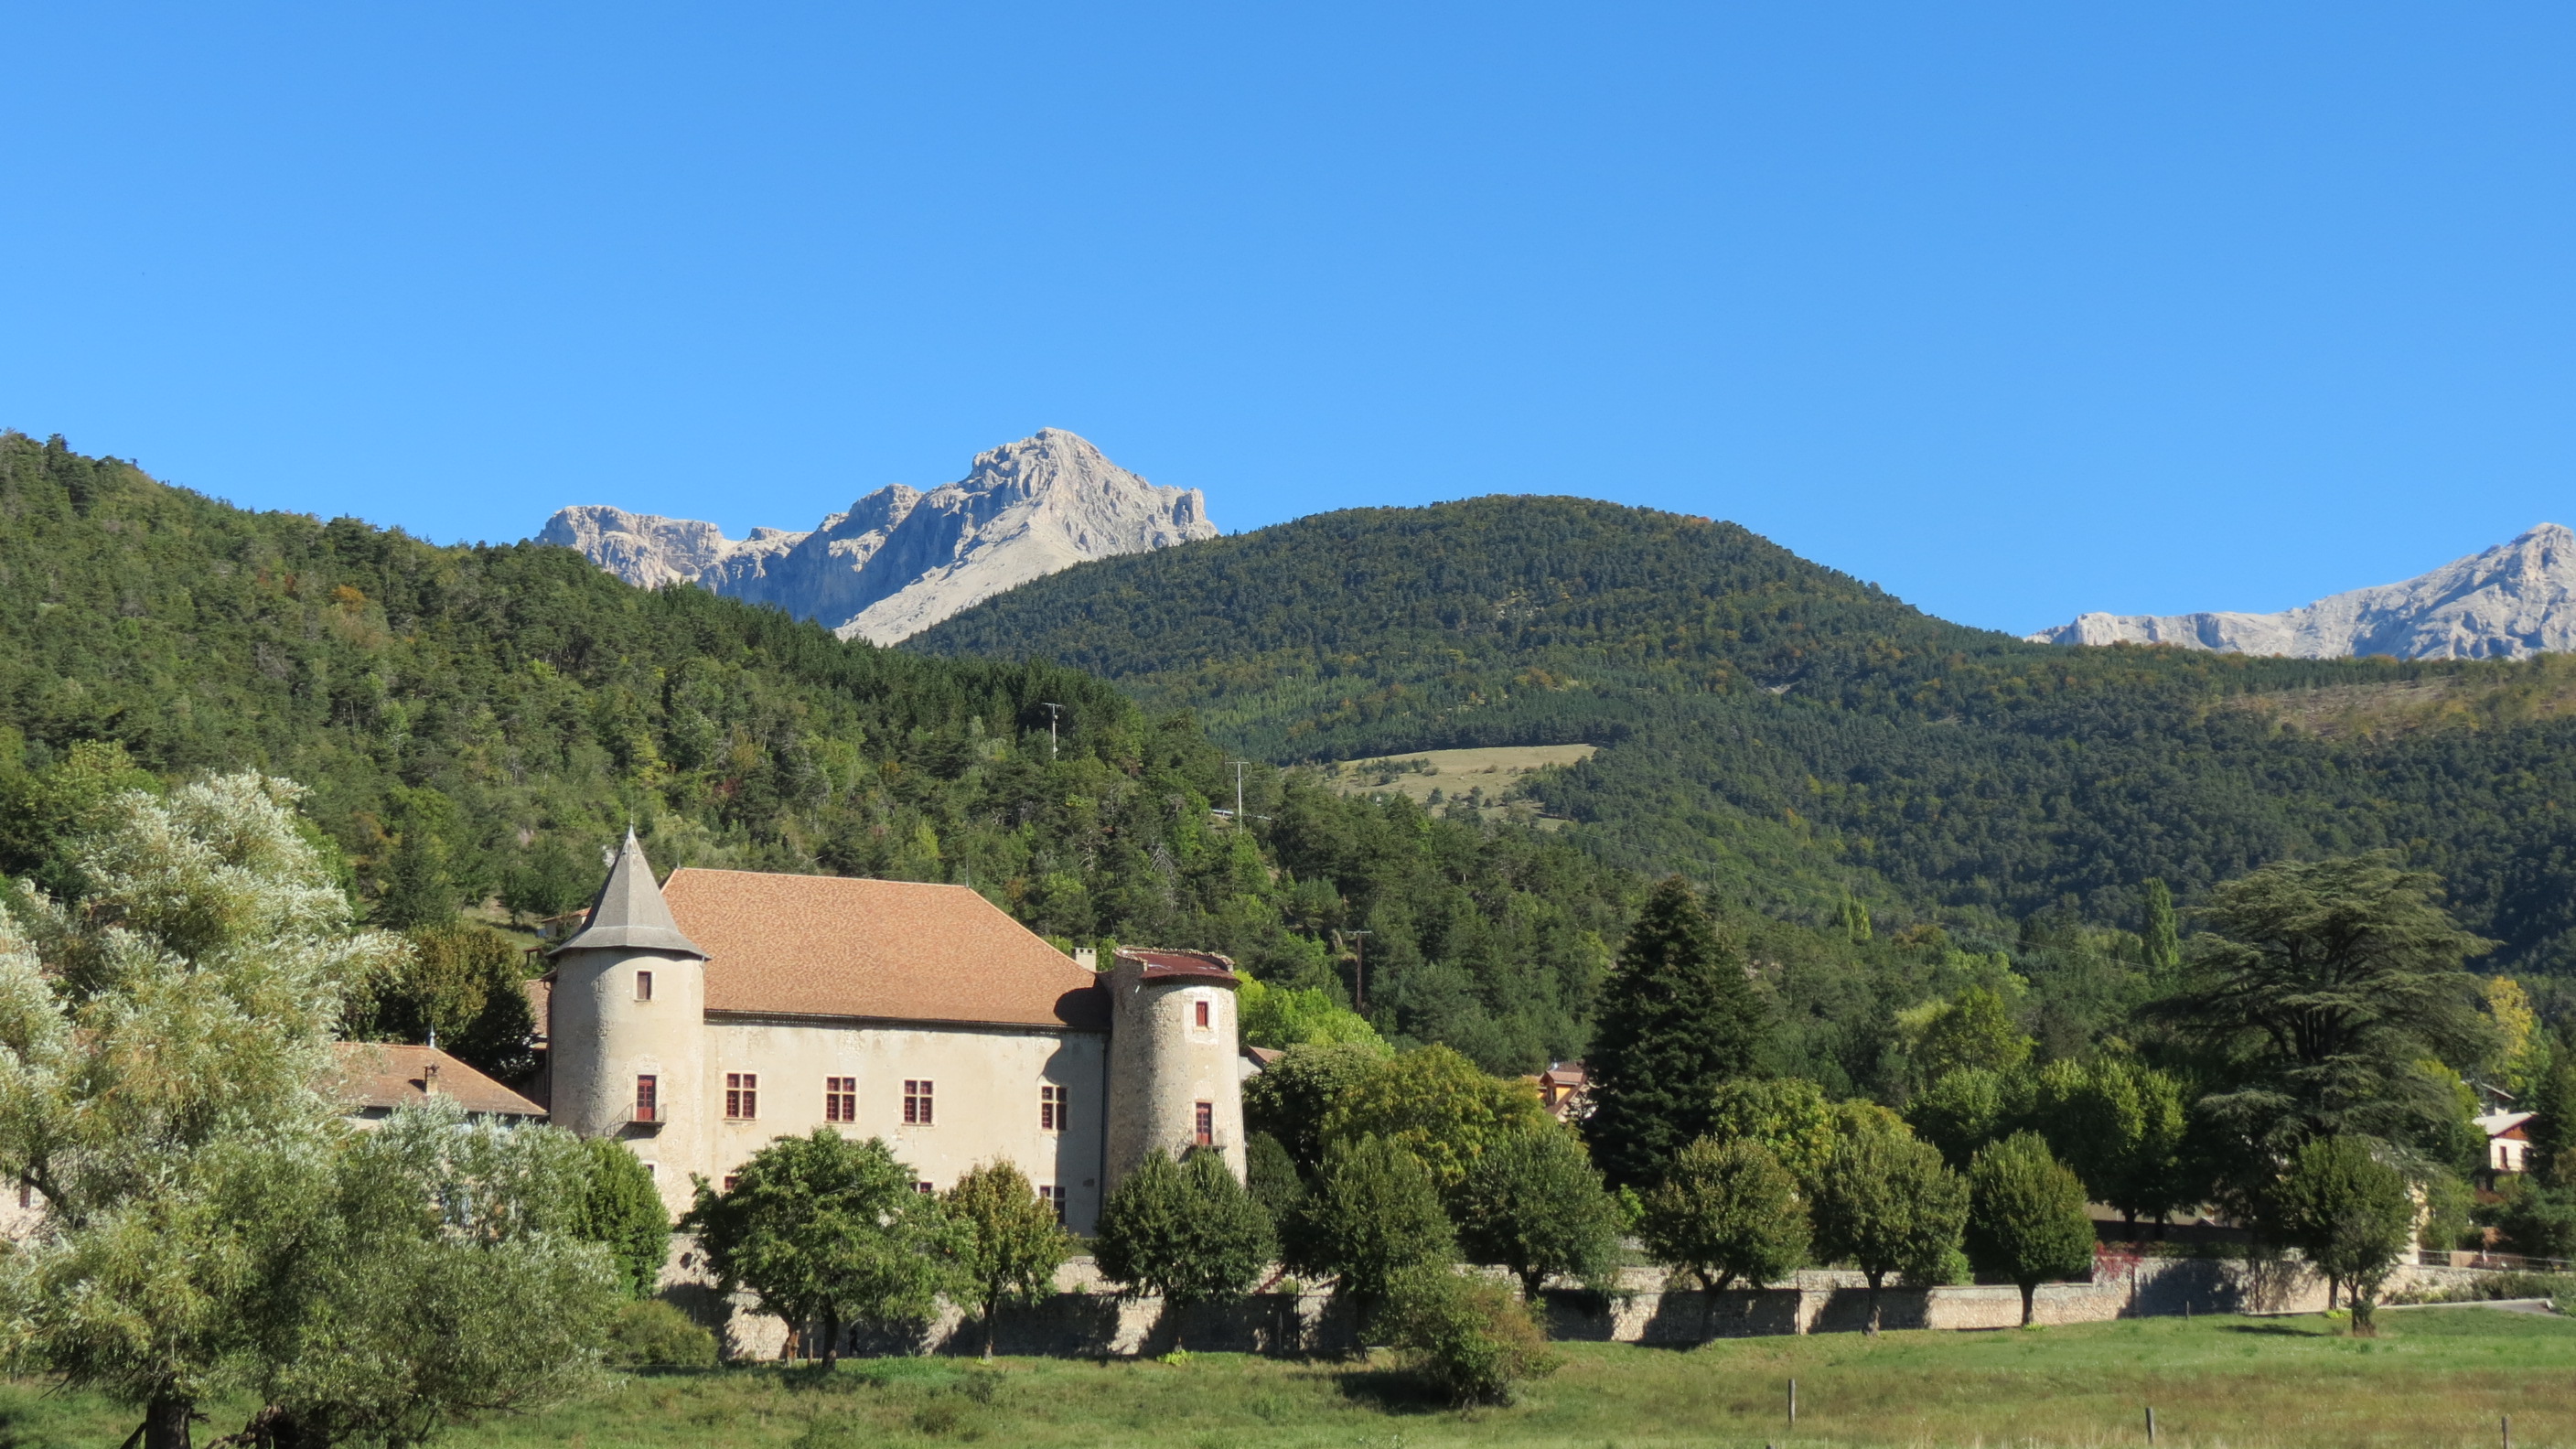 326-chateau_de_montmaur-hautes-alpes.jpg